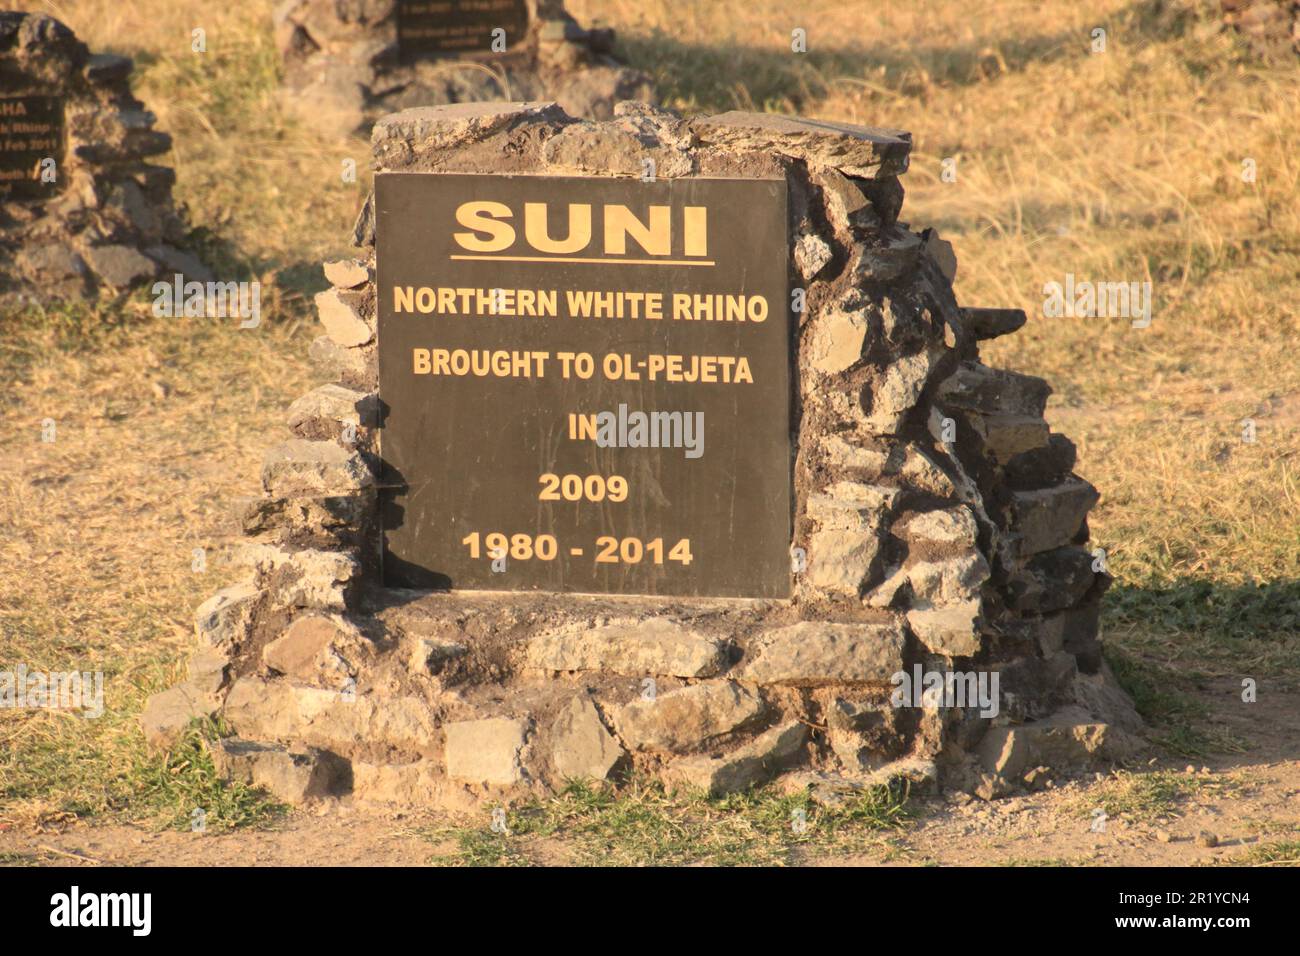 Tumba del rinoceronte blanco del norte de Suni. OL Pejeta Conservancy. Laikipia Plateau, Kenia, África, Cementerio de rinocerontes, lápidas de rinoceronte que marcan donde los animales Foto de stock